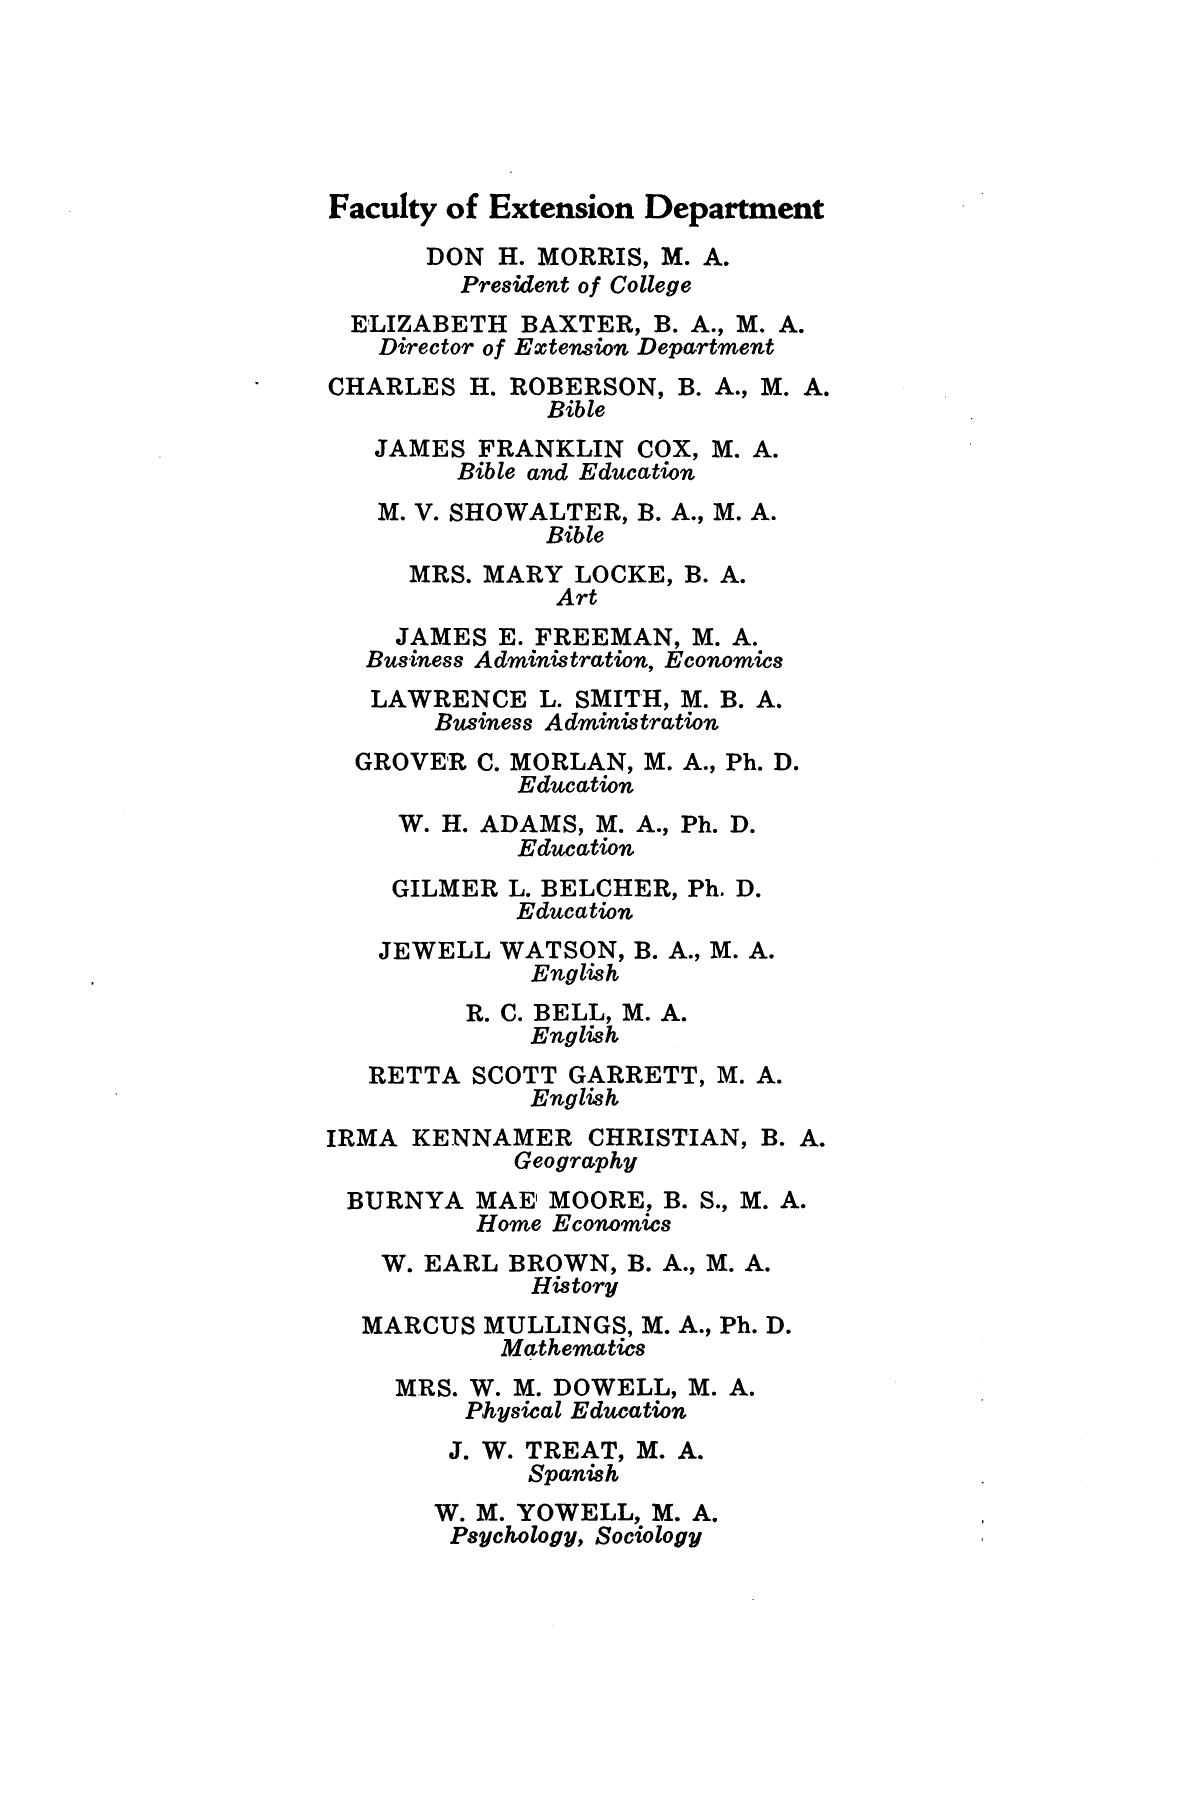 Catalog of Abilene Christian College, 1941-1942
                                                
                                                    3
                                                